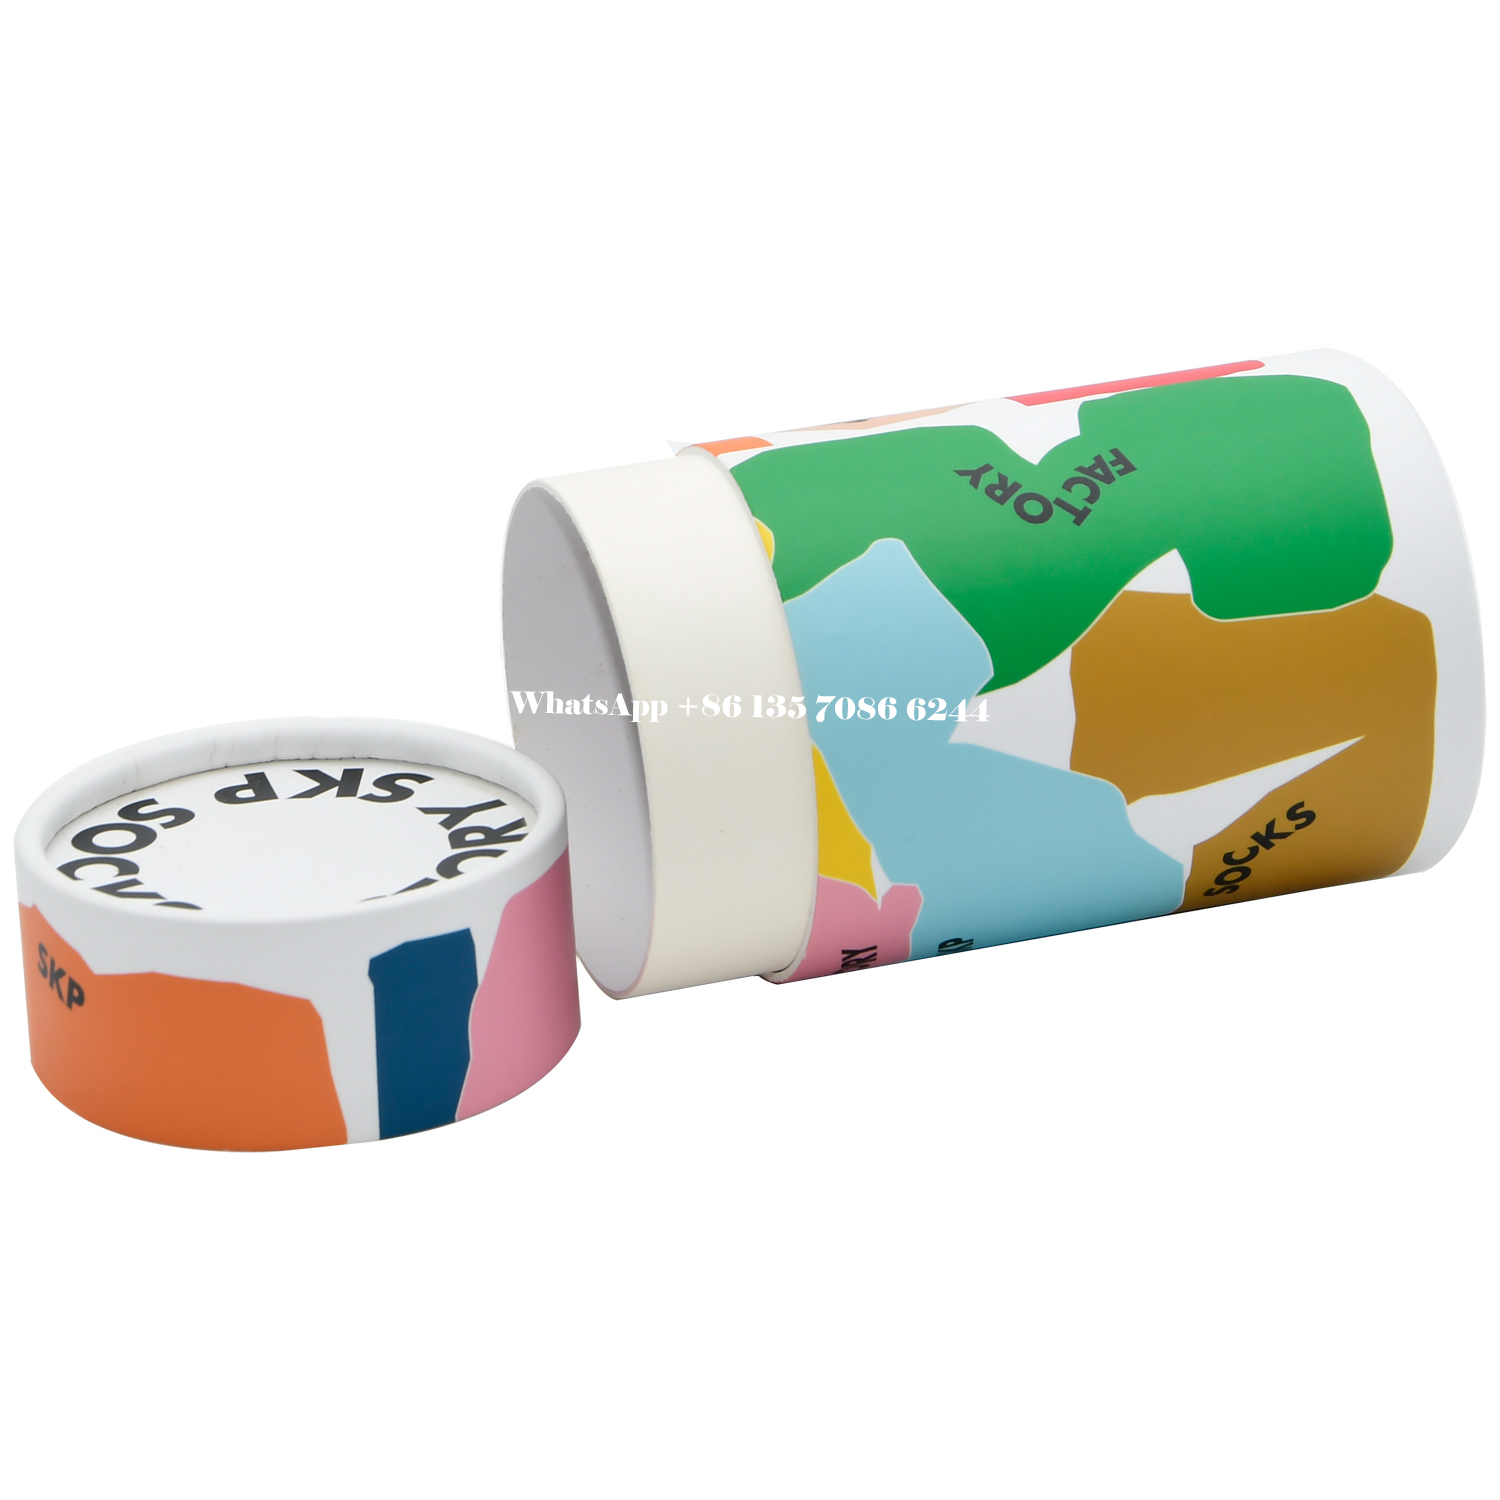  Cajas cilíndricas de papel para calcetines personalizados  